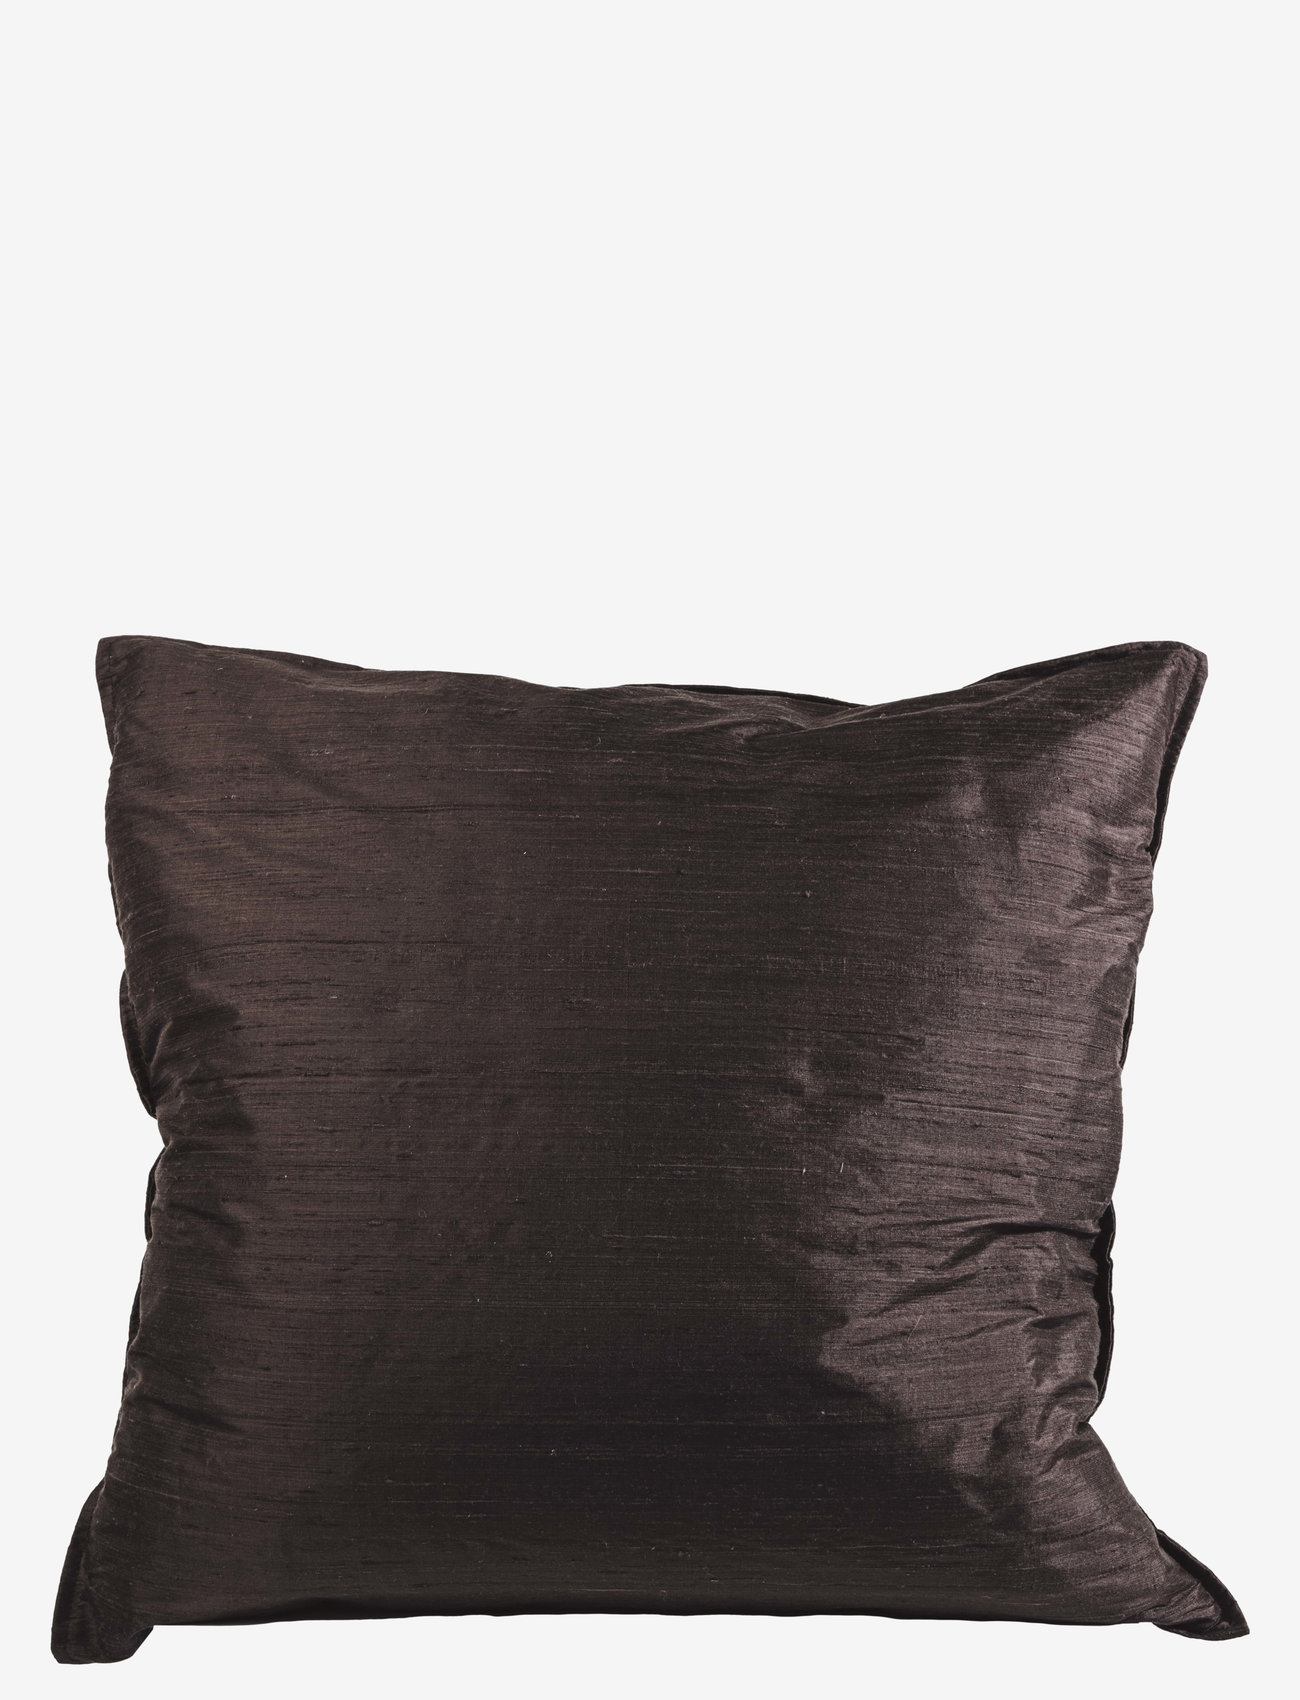 DAY Home - Day Seat silk cushion cover - kissenbezüge - bean - 0